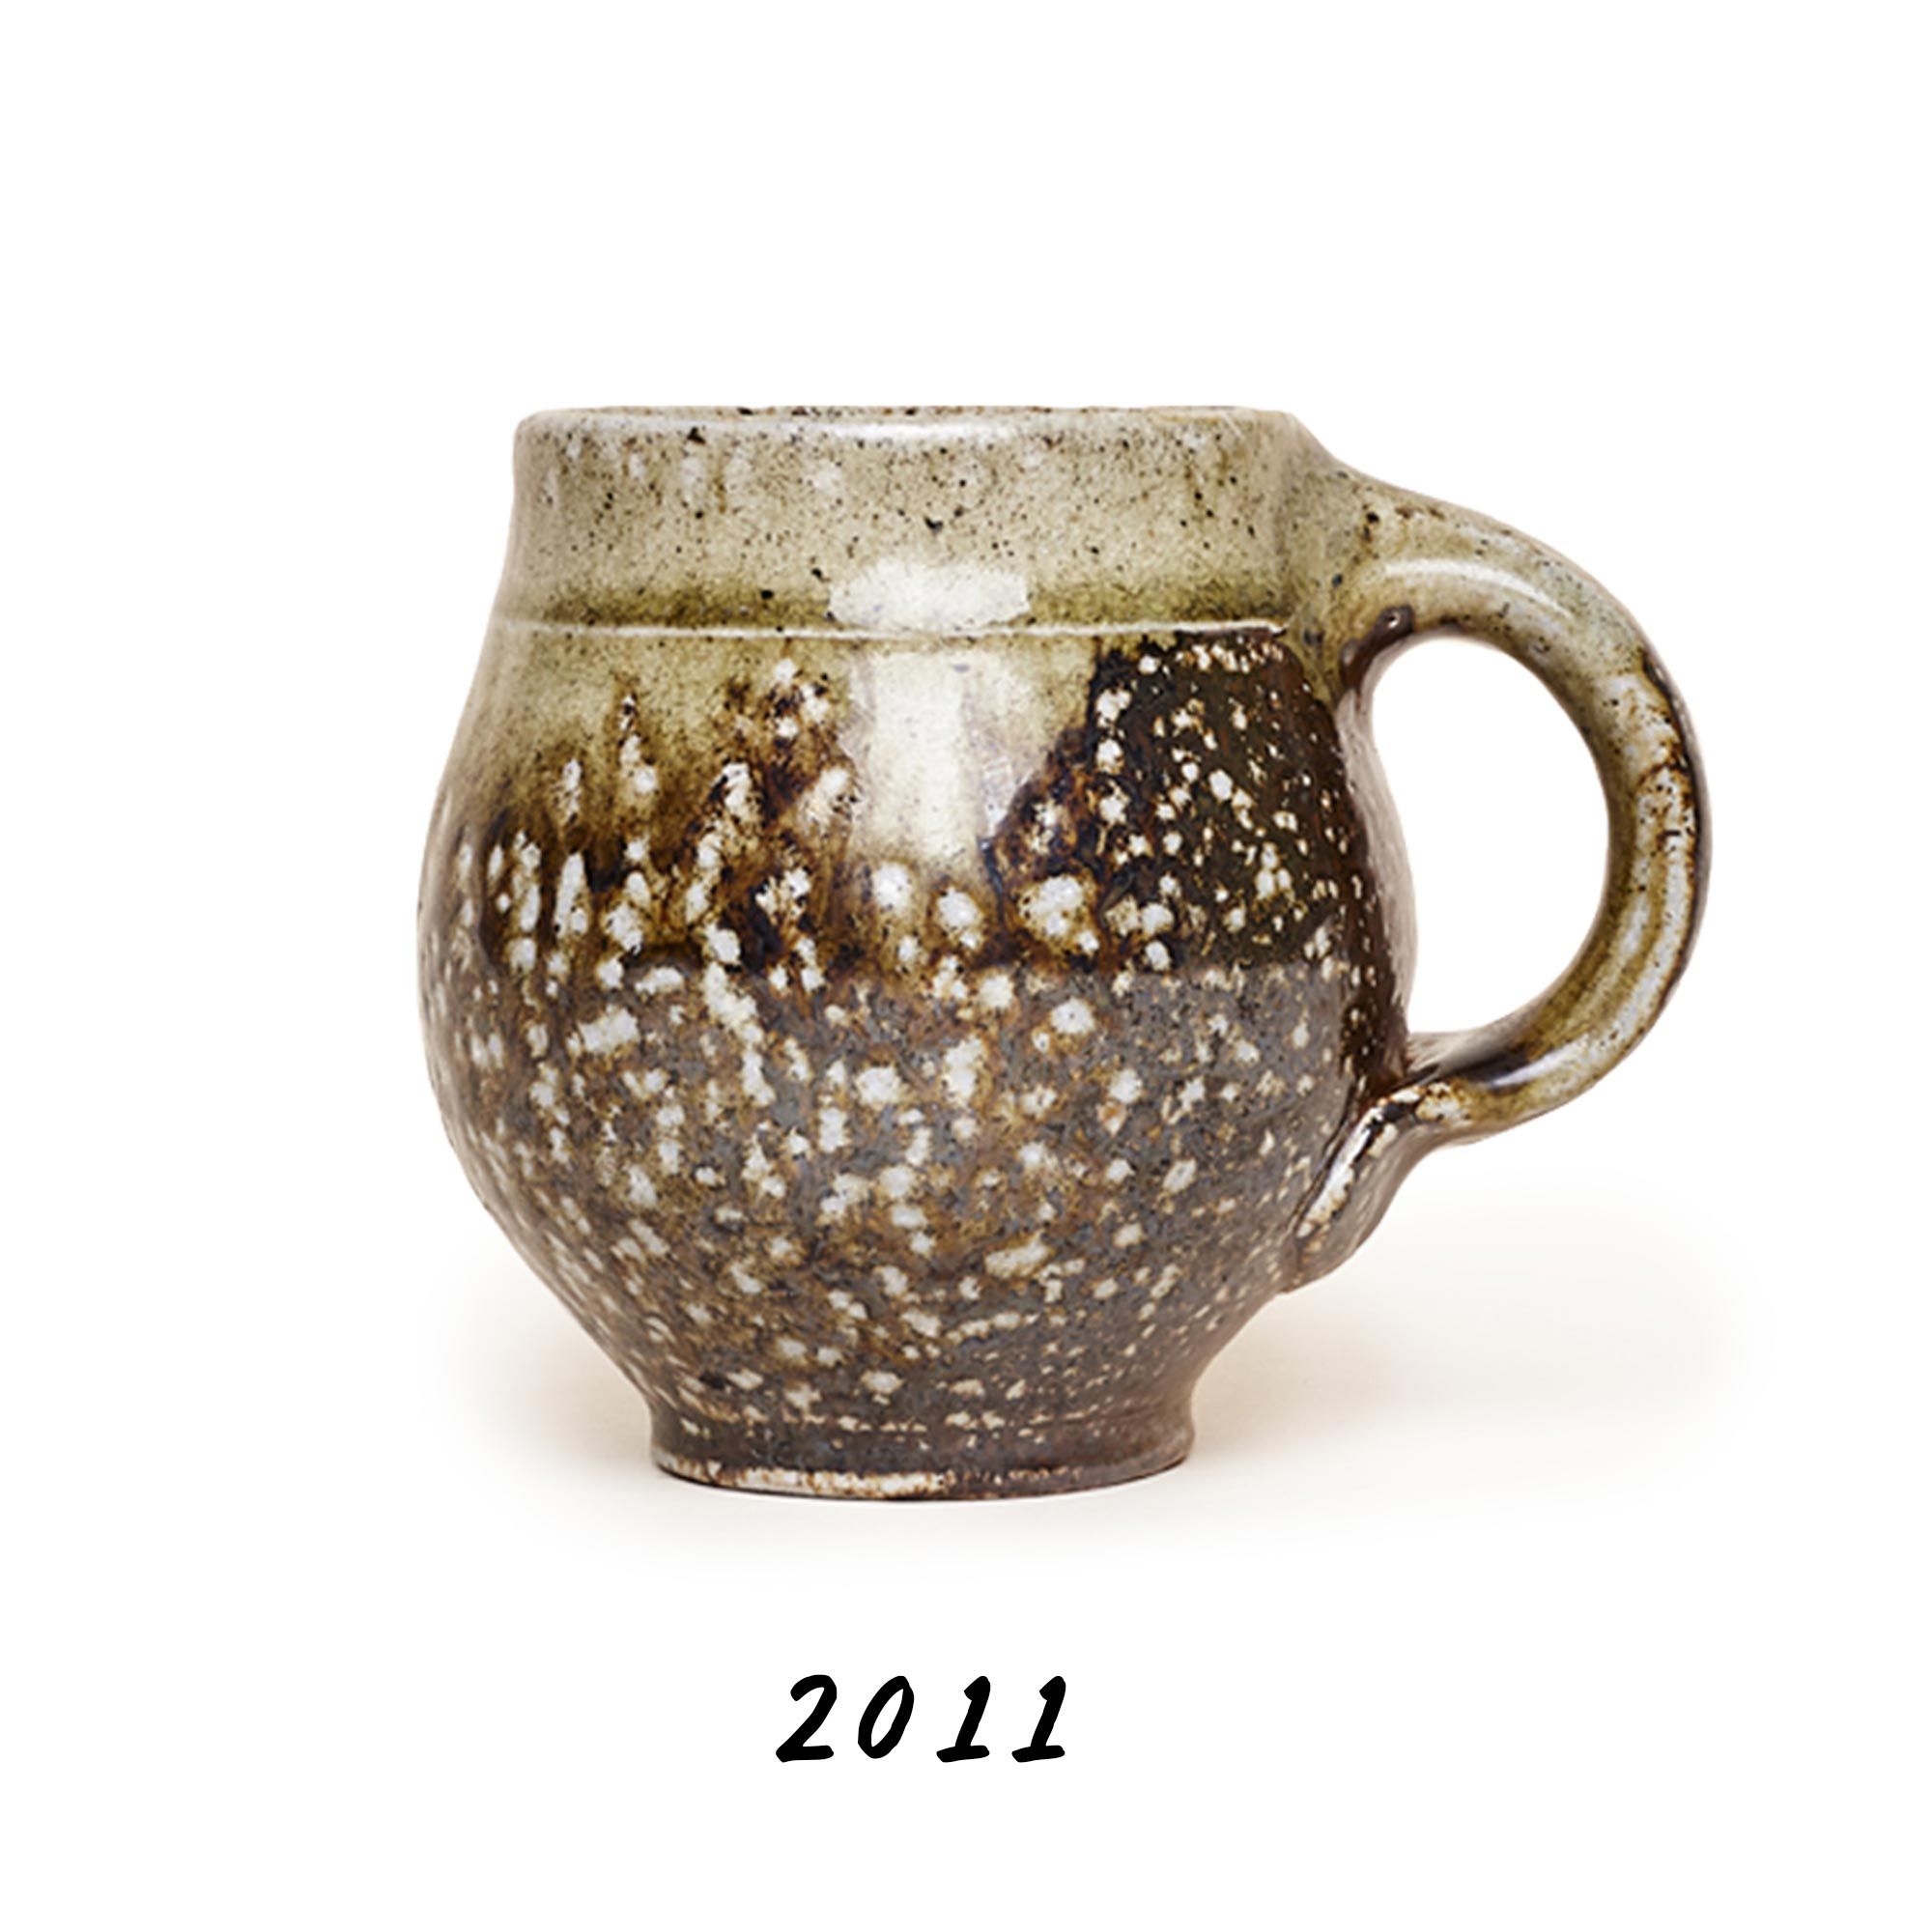 2011 Wood fired mug